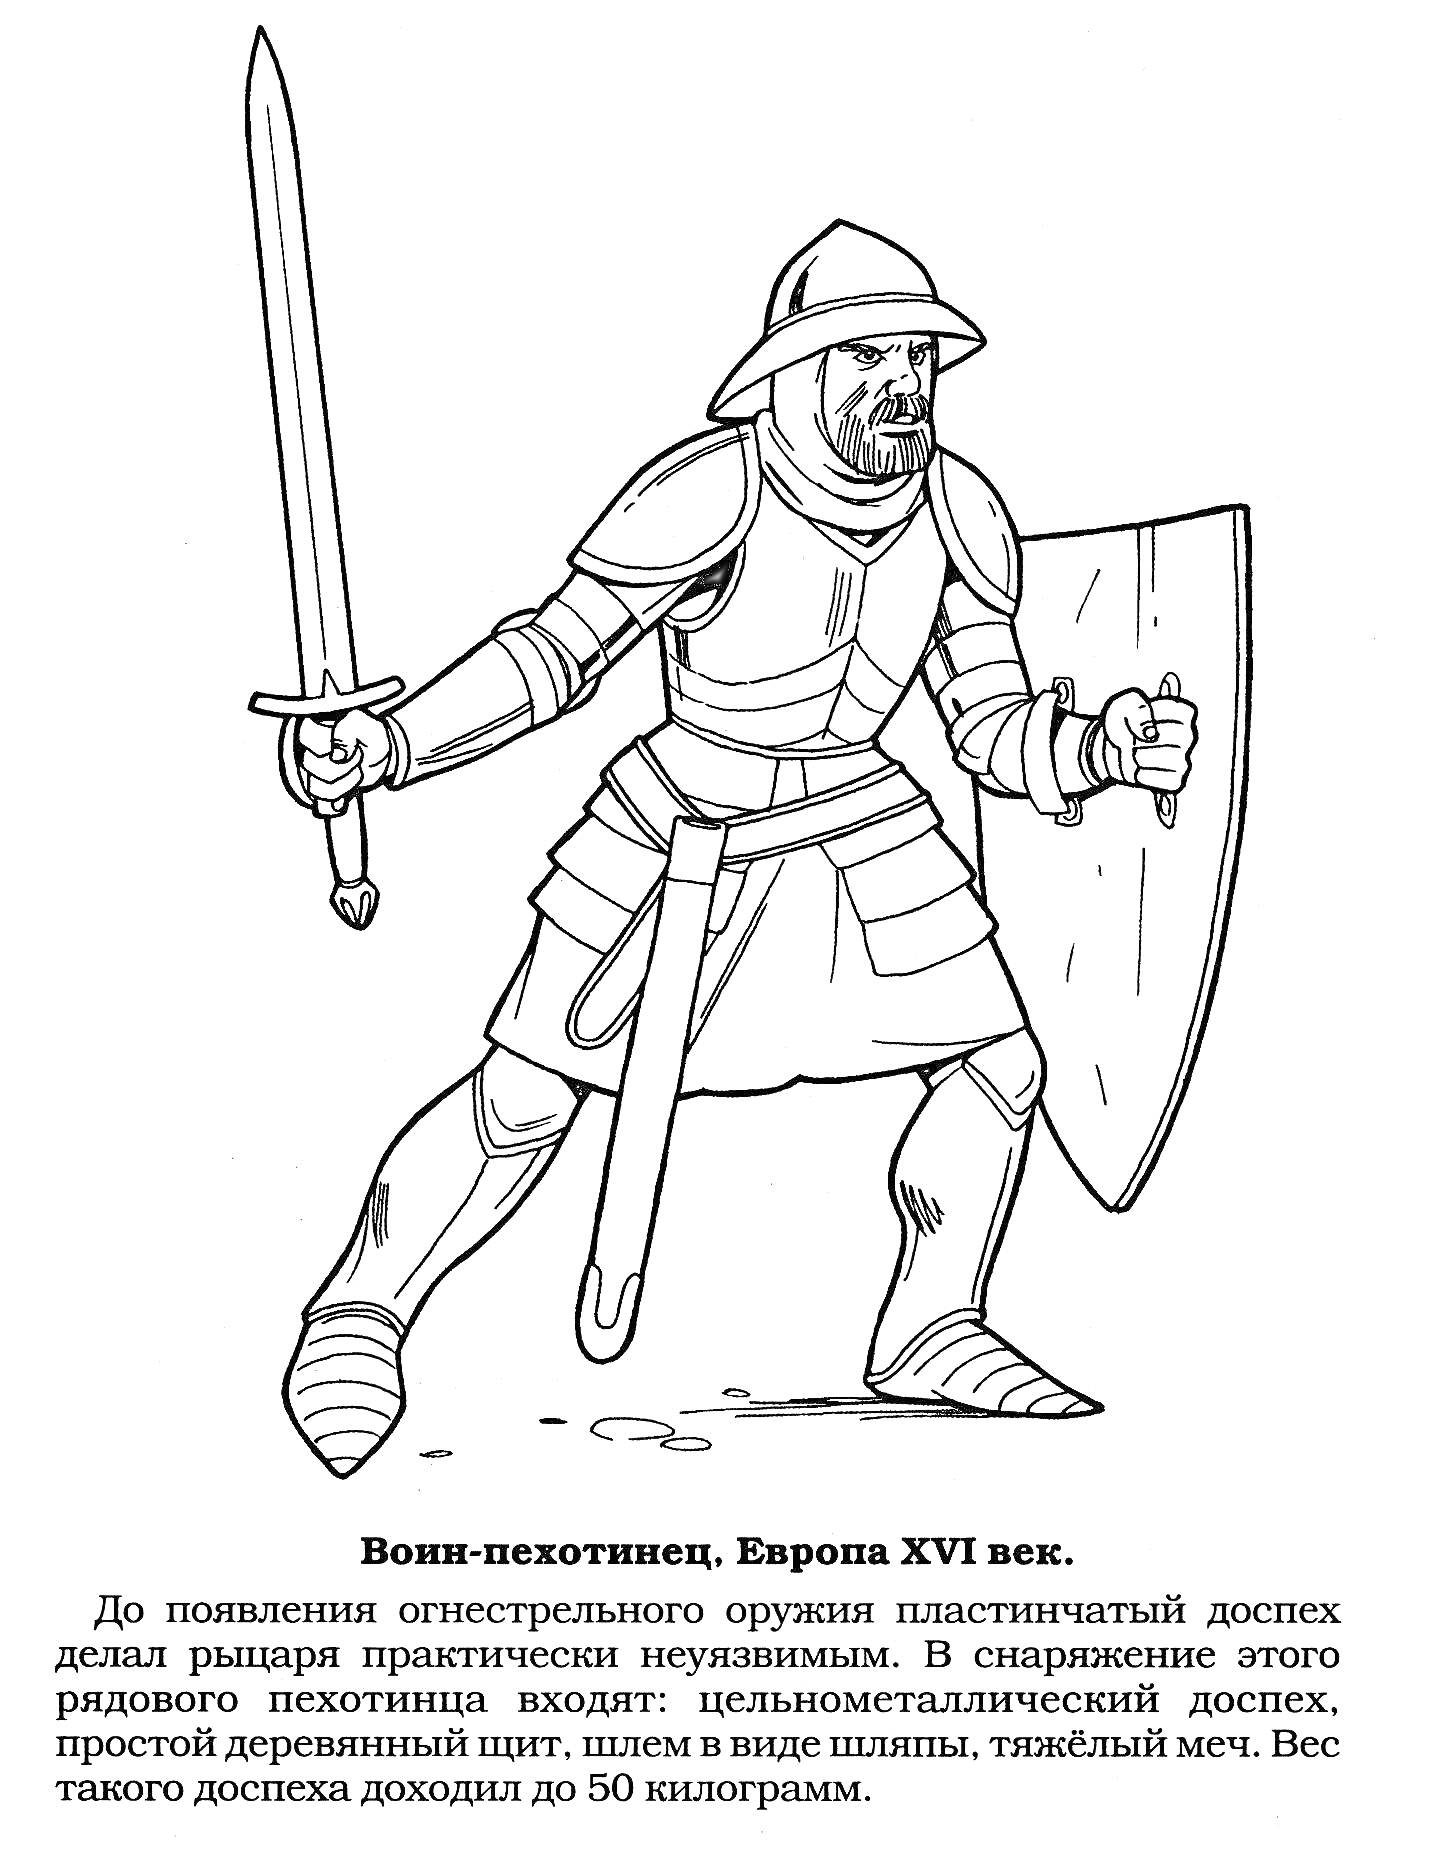 Воин-пехотинец, Европа XVI век (меч, пластинчатый доспех, металлический шлем, деревянный щит)